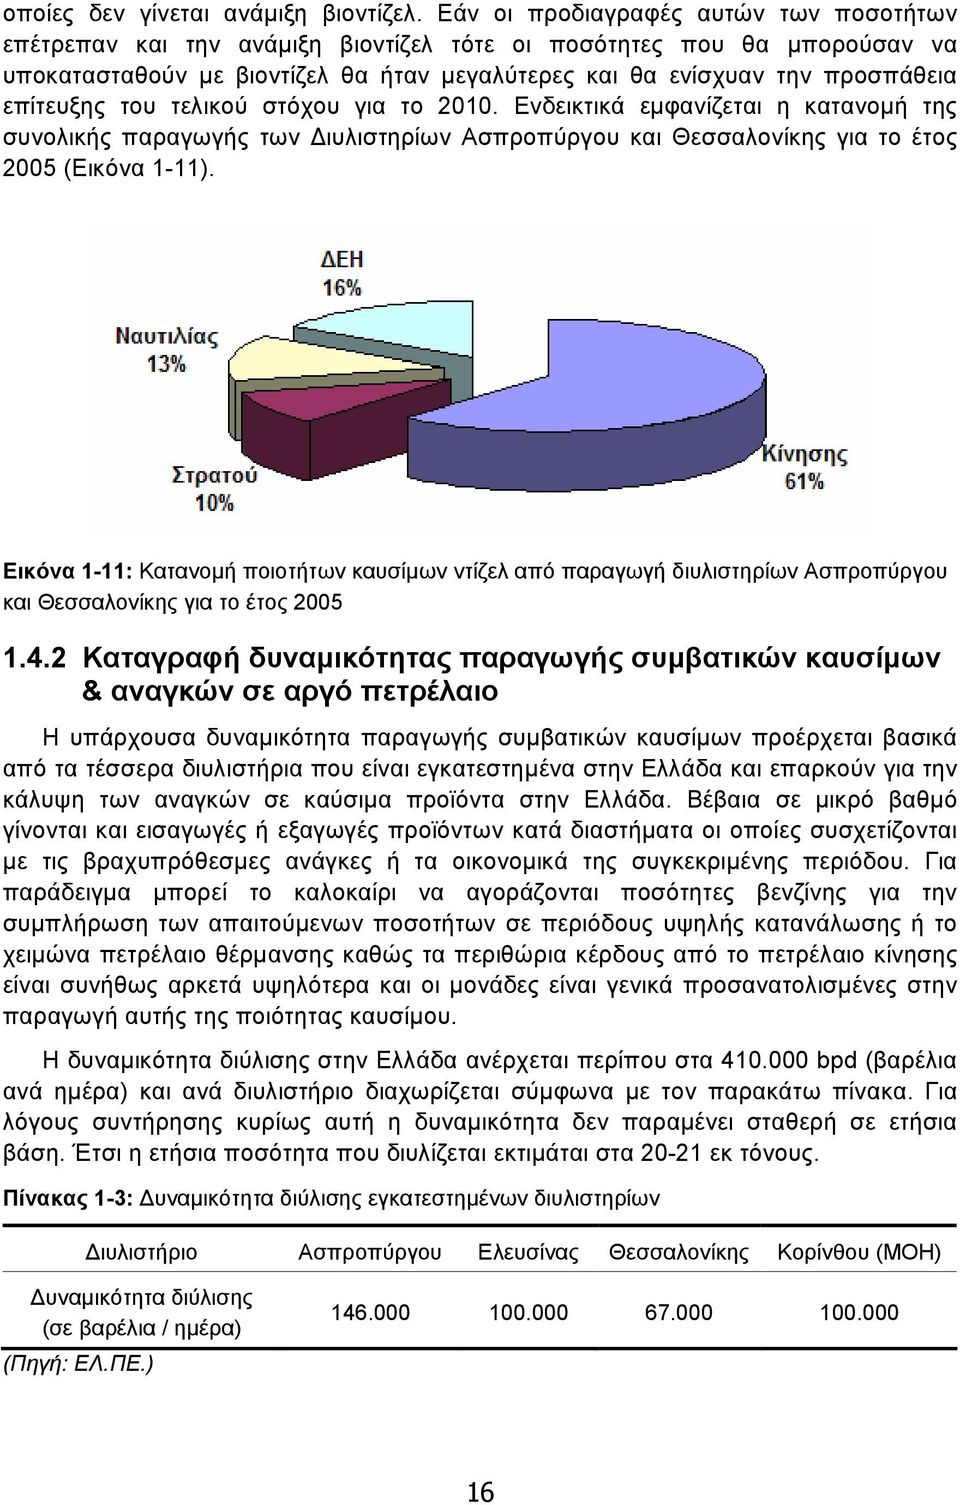 επίτευξης του τελικού στόχου για το 2010. Ενδεικτικά εµφανίζεται η κατανοµή της συνολικής παραγωγής των ιυλιστηρίων Ασπροπύργου και Θεσσαλονίκης για το έτος 2005 (Εικόνα 1-11).